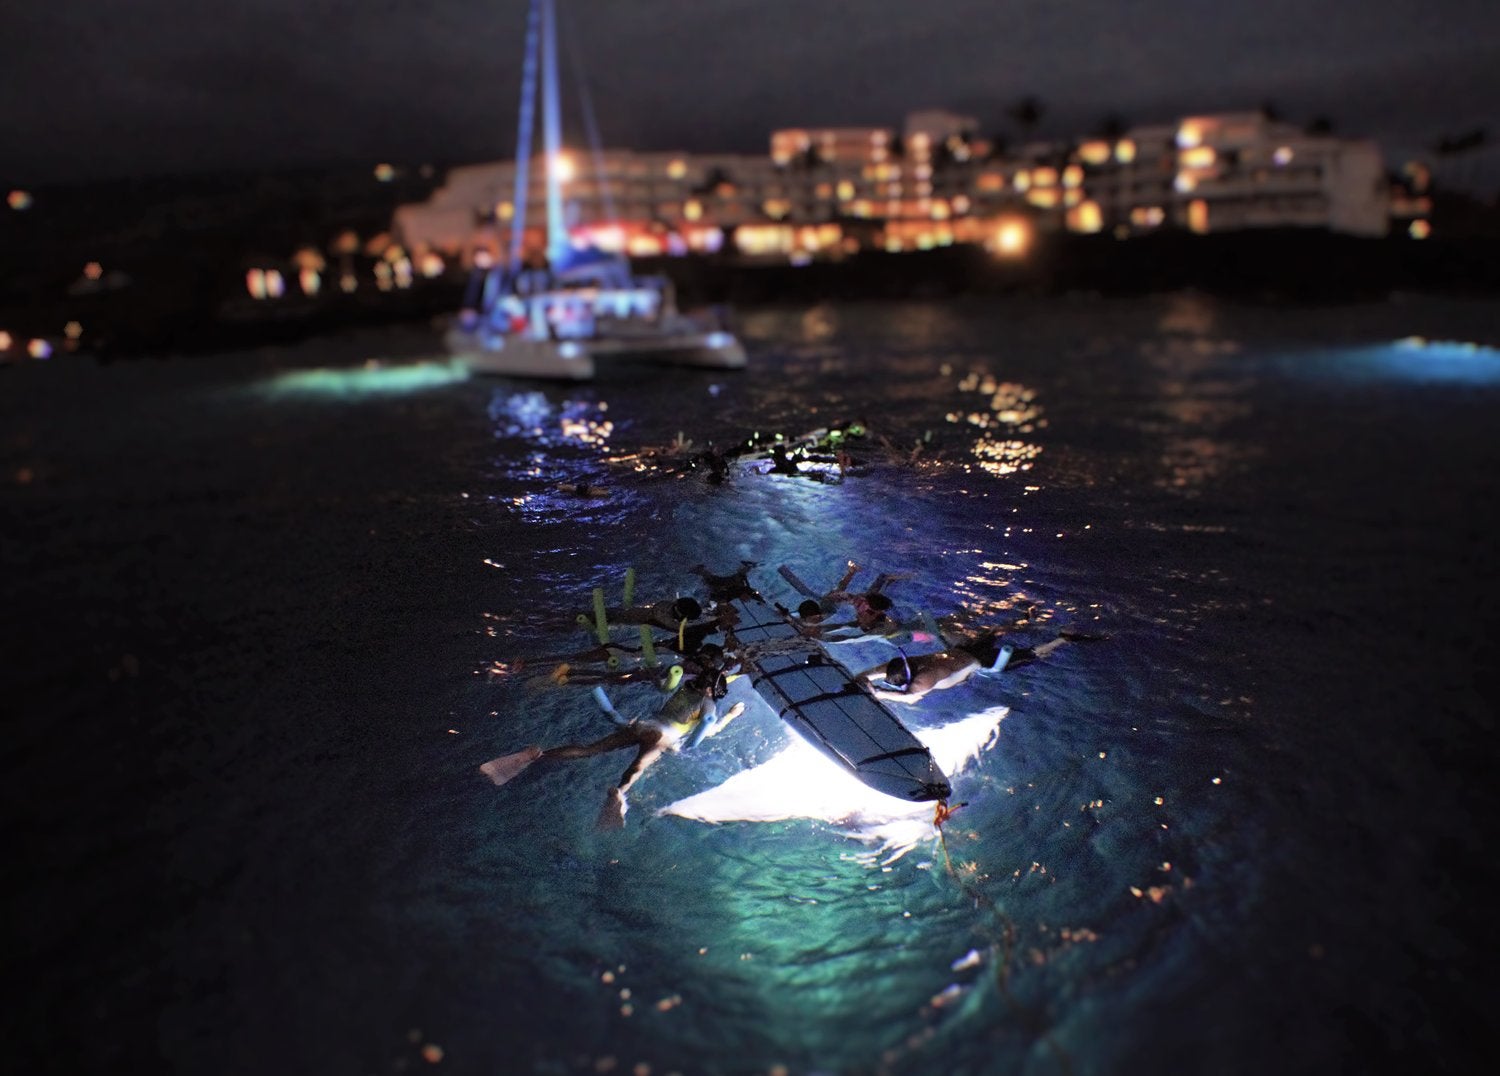  El snorkeling nocturno con mantarrayas es una experiencia increíble. (crédito de la foto: Konastyle)